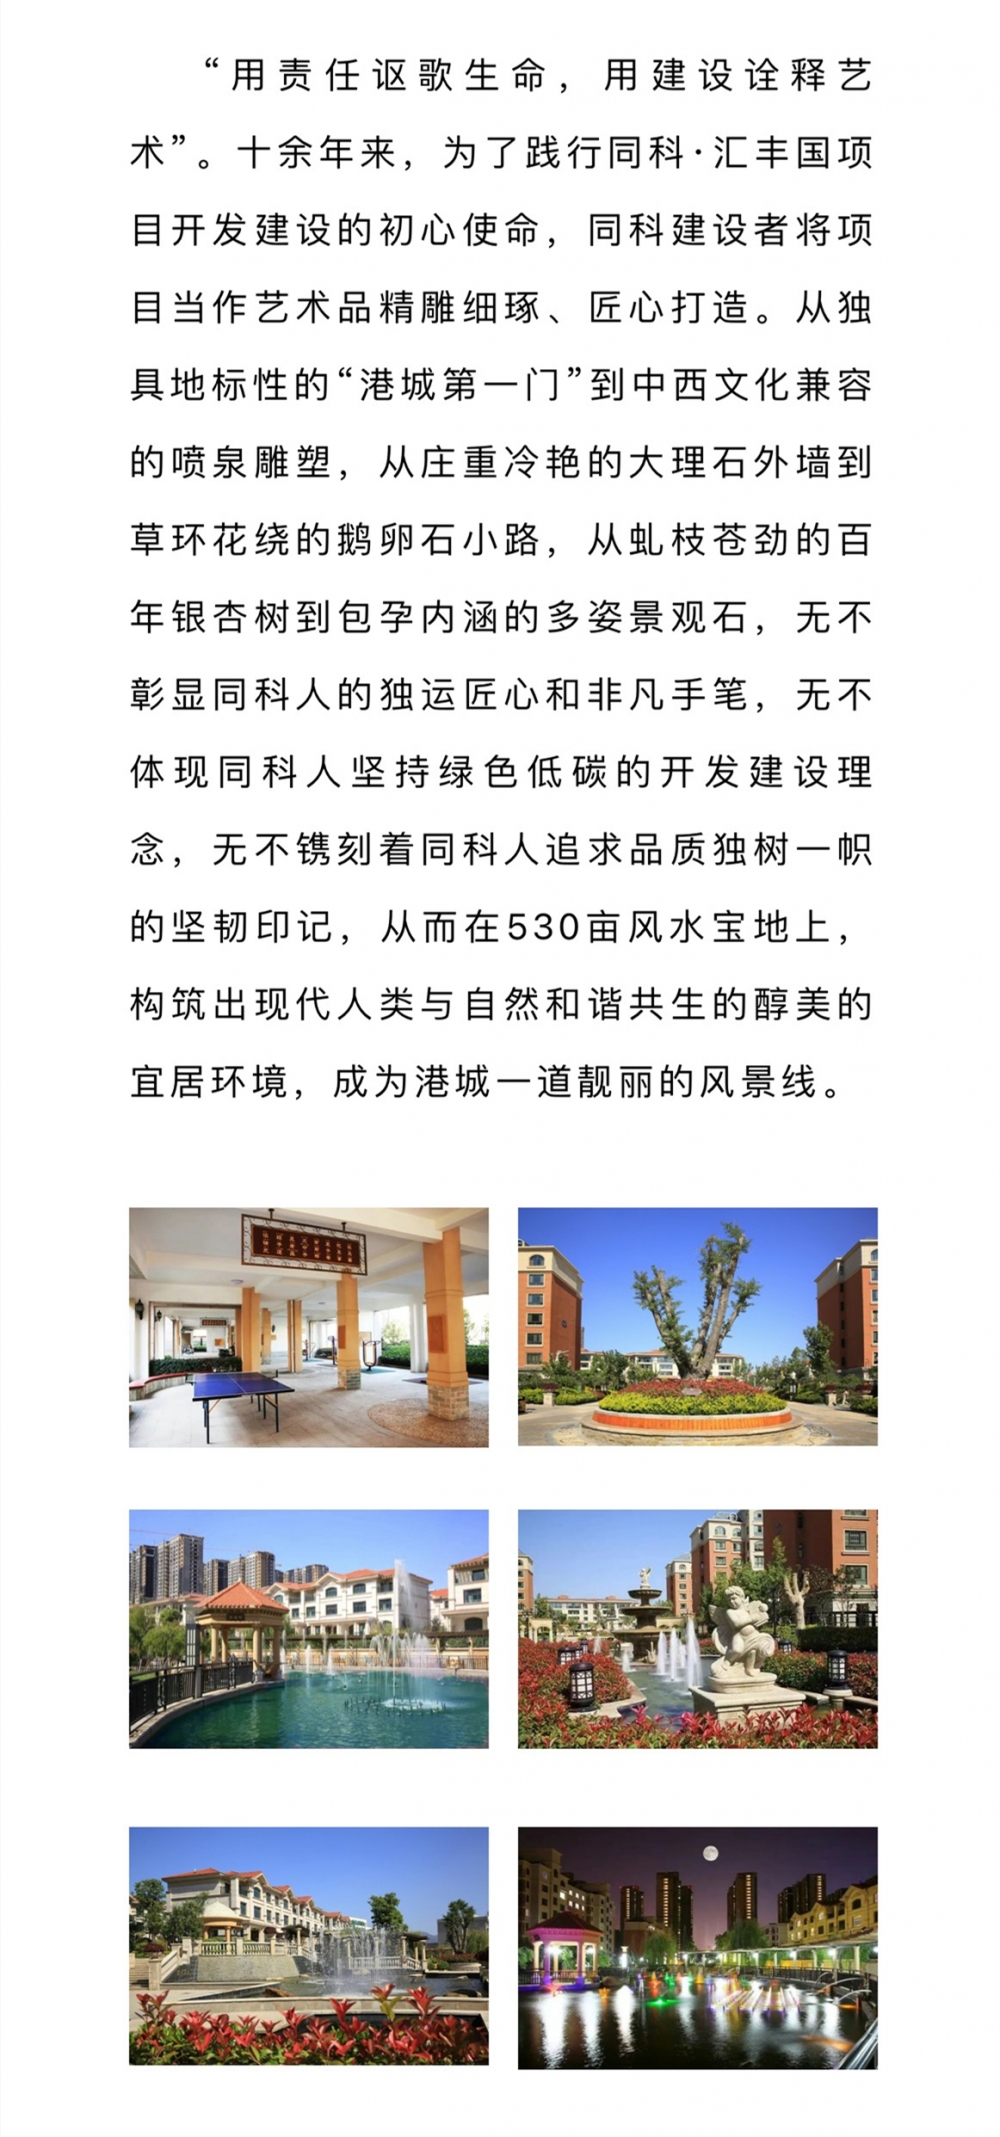 同科·汇丰国际小区荣获省级宜居示范居住区称号-连云港房产网